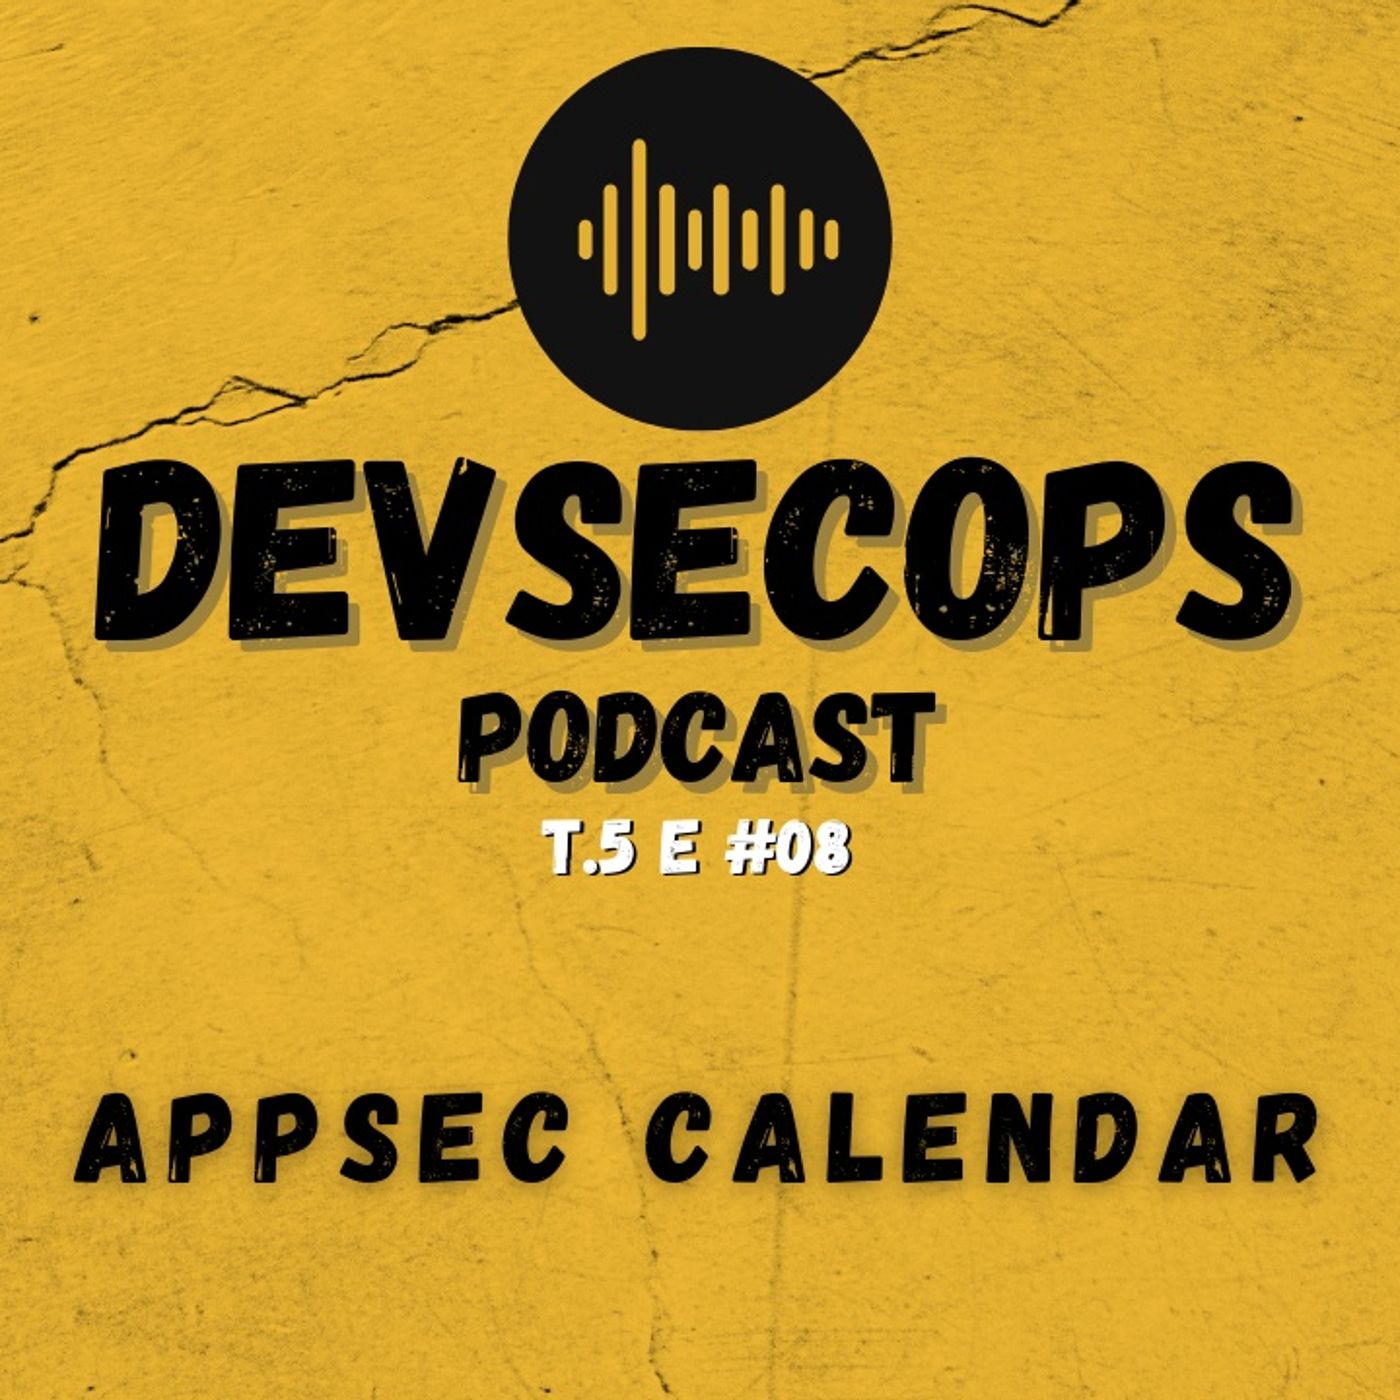 #05-08 - AppSec Calendar